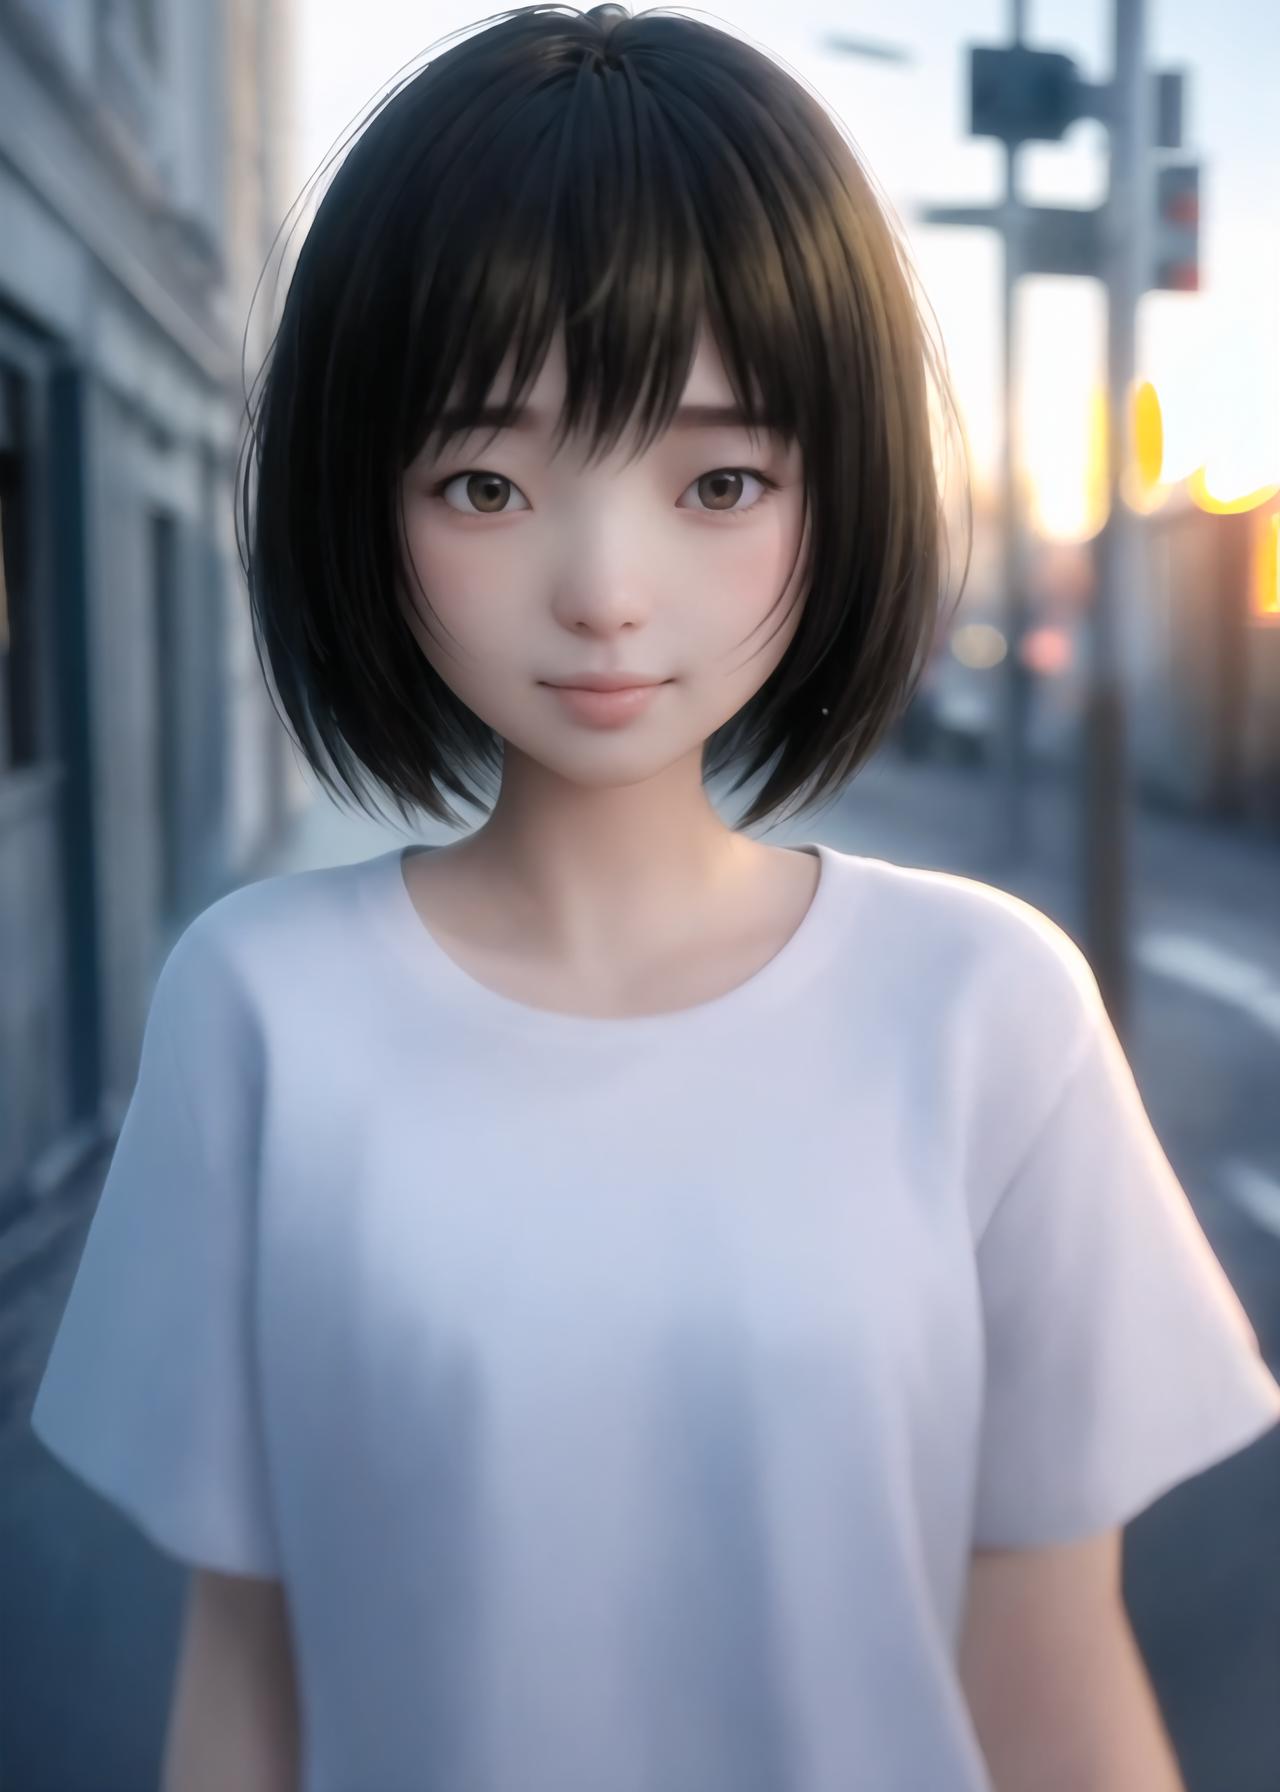 AI model image by HIKwanzi